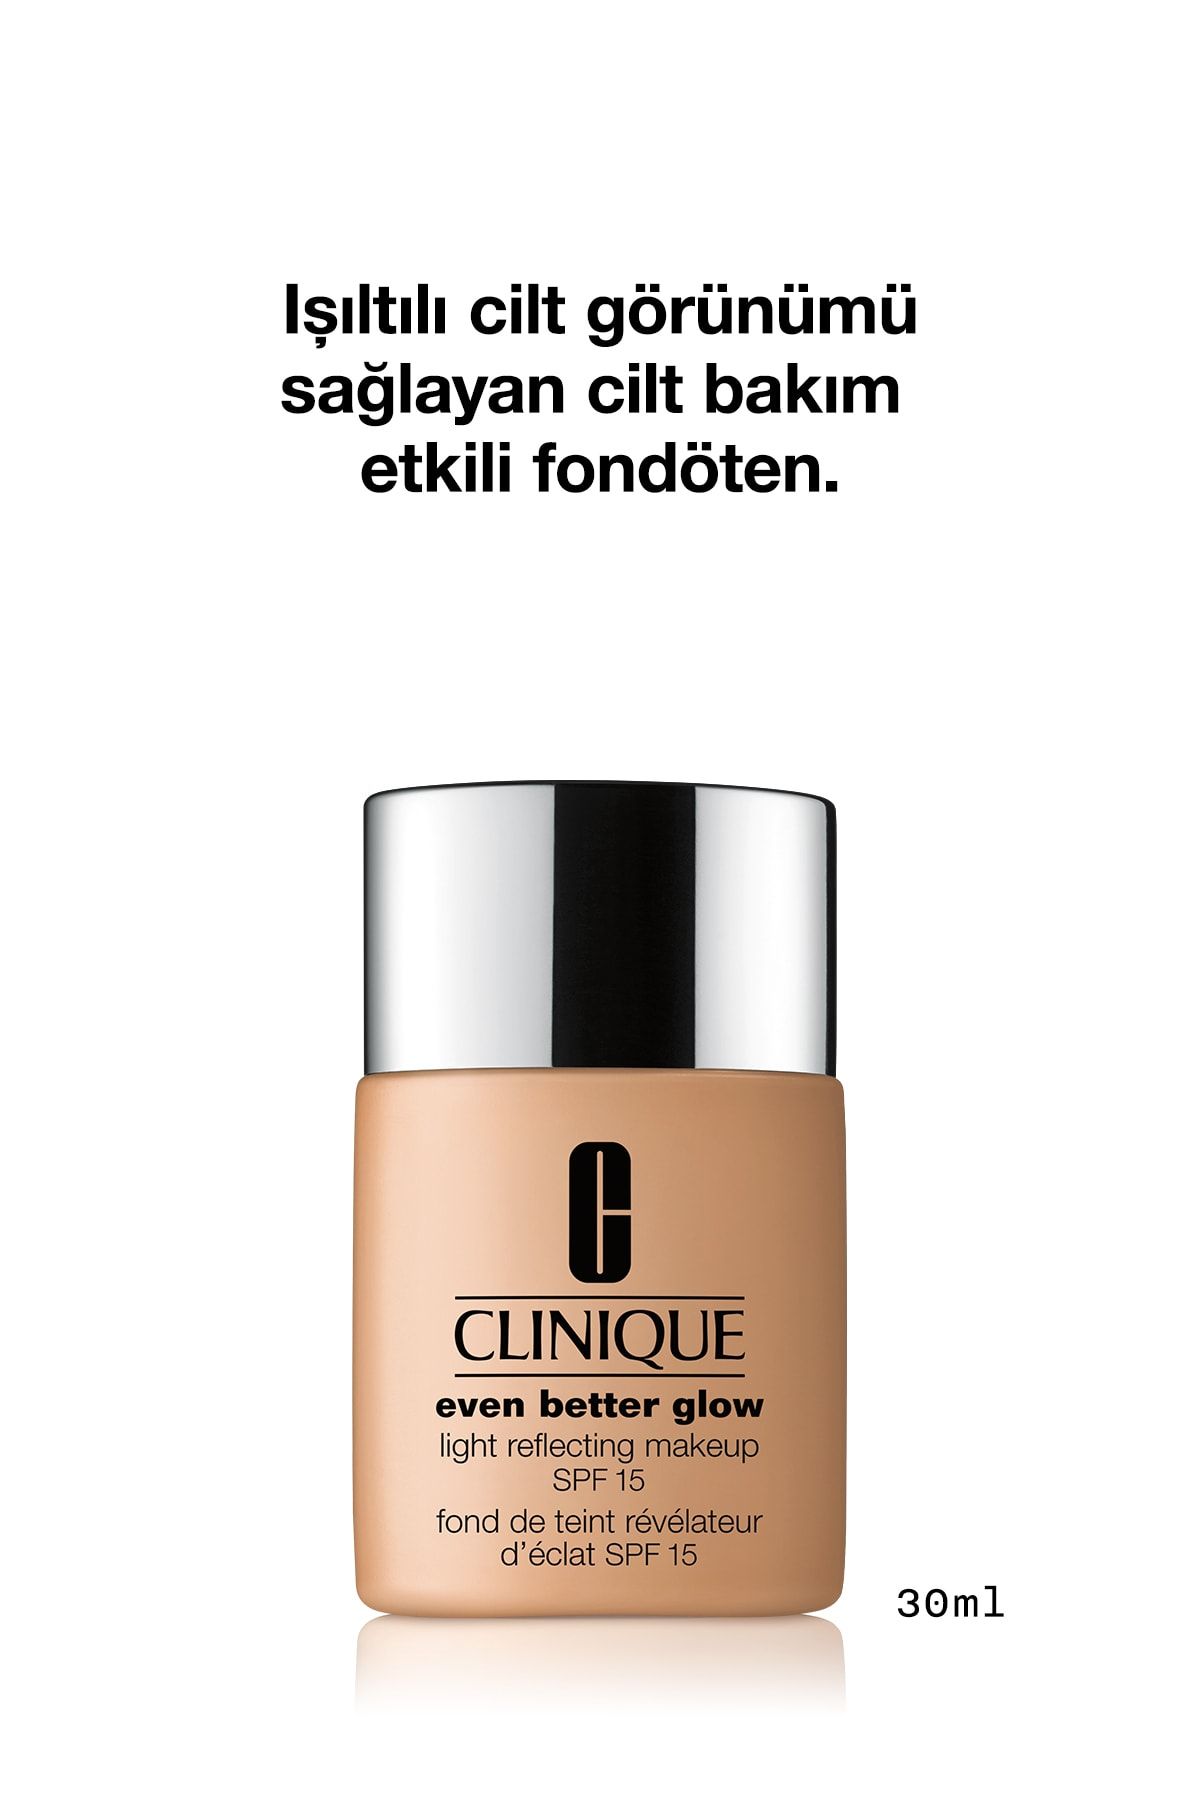 Clinique Fondöten - Even Better Glow Makeup SPF 15 Foundation CN 90 Sand 30 ml 020714873790